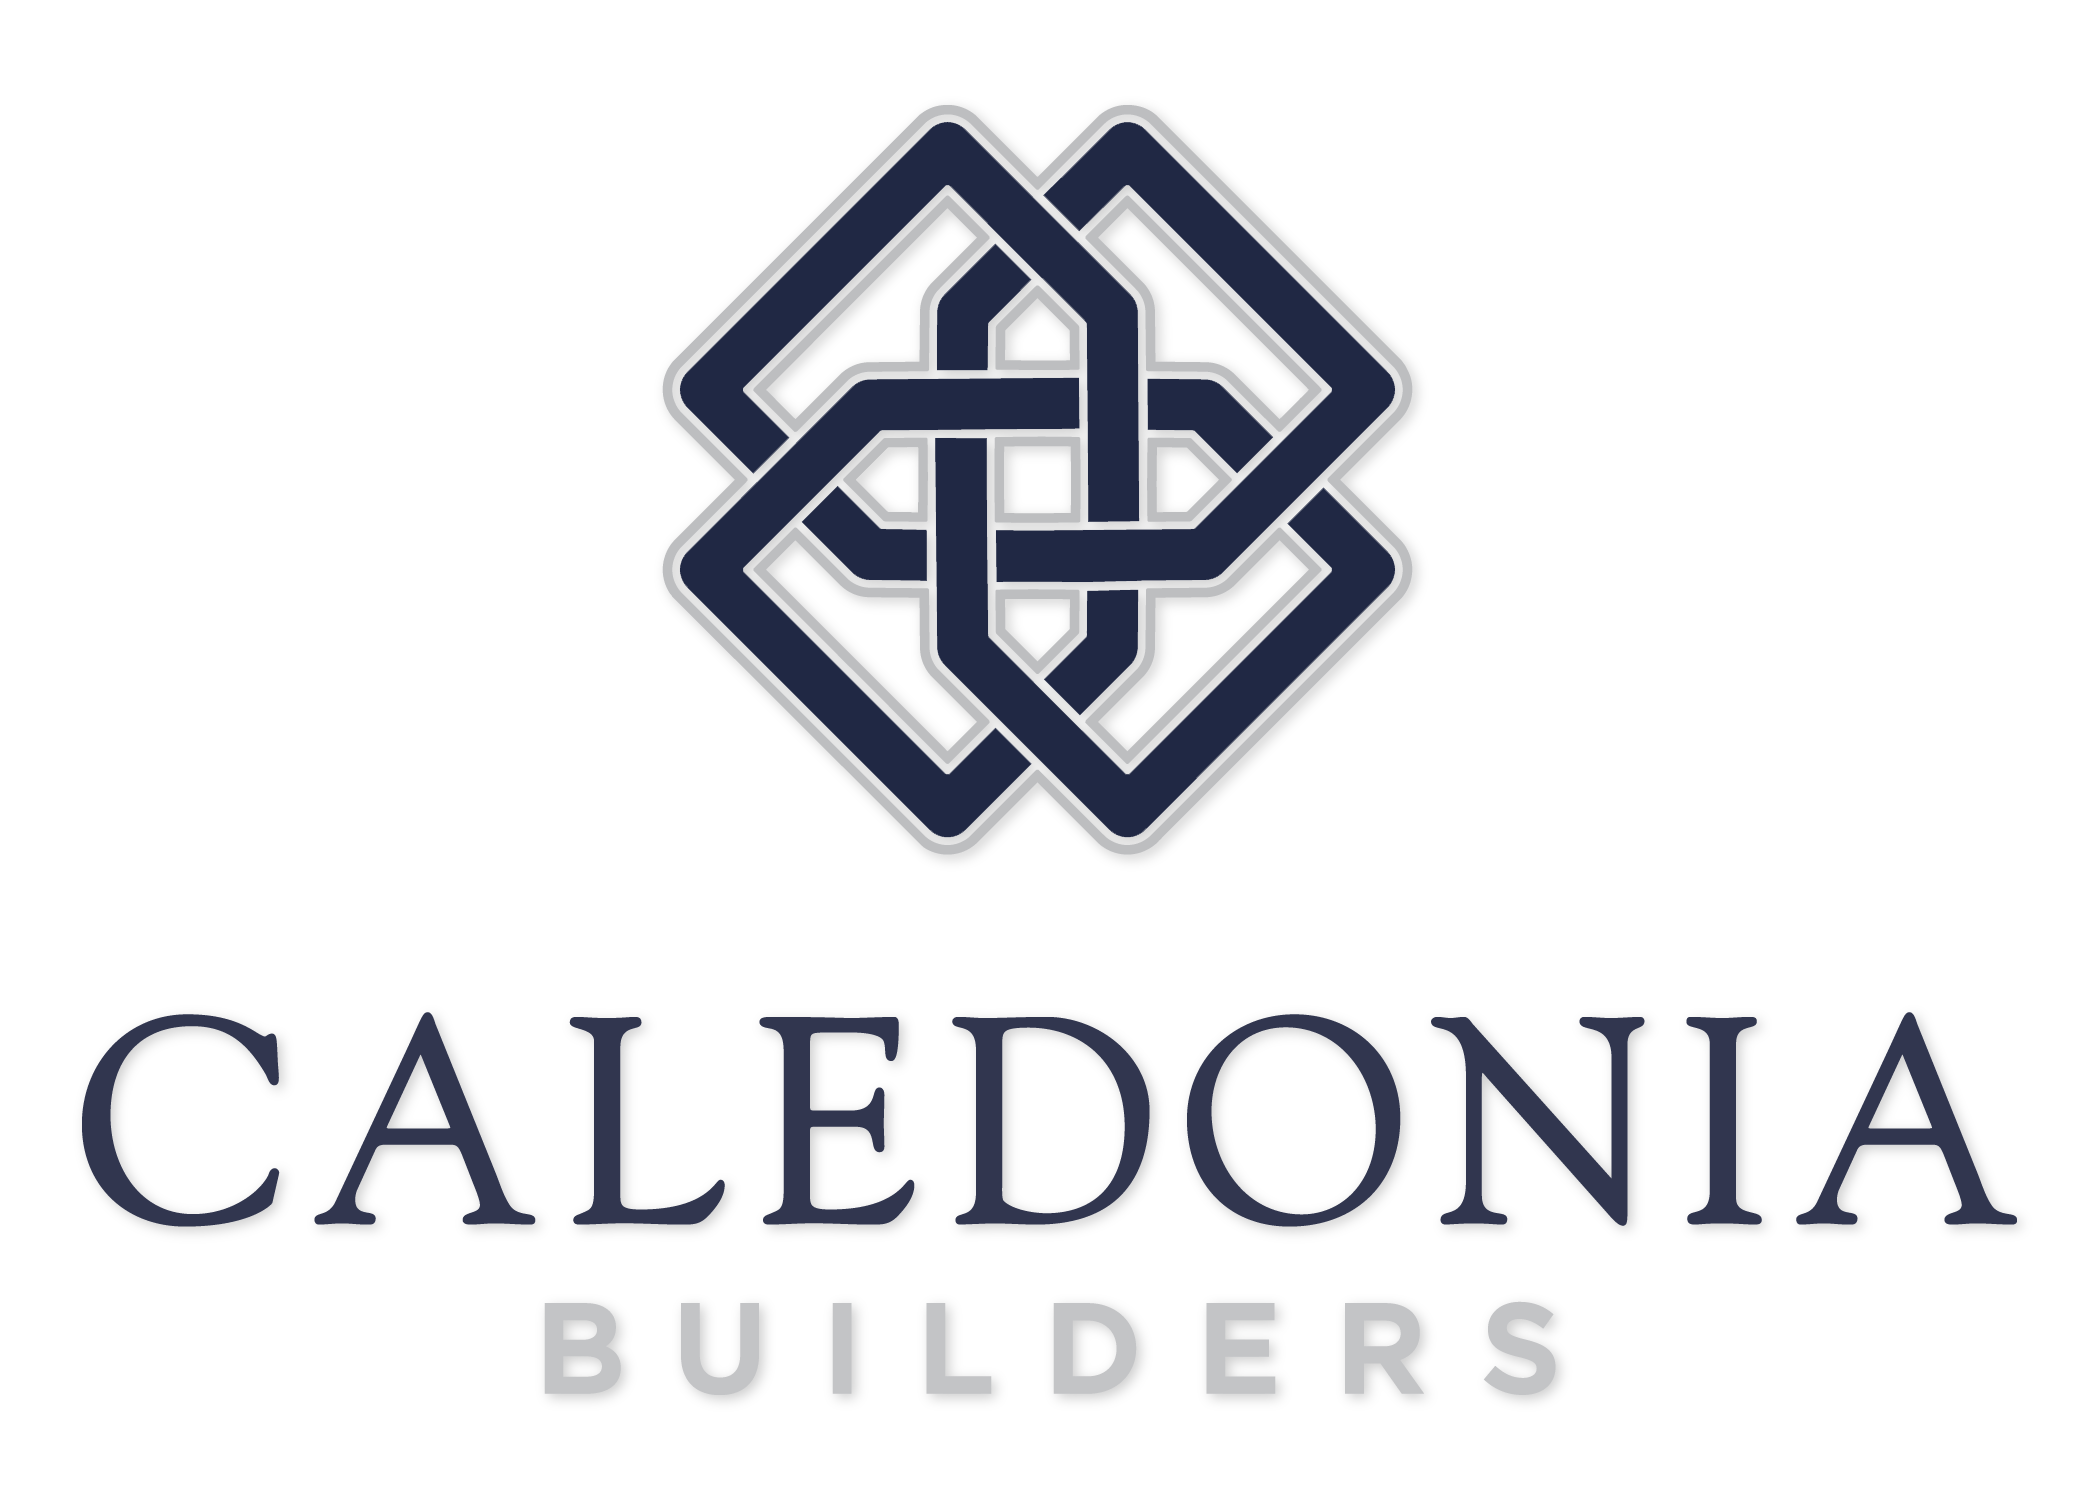 Caledonia builders logo.